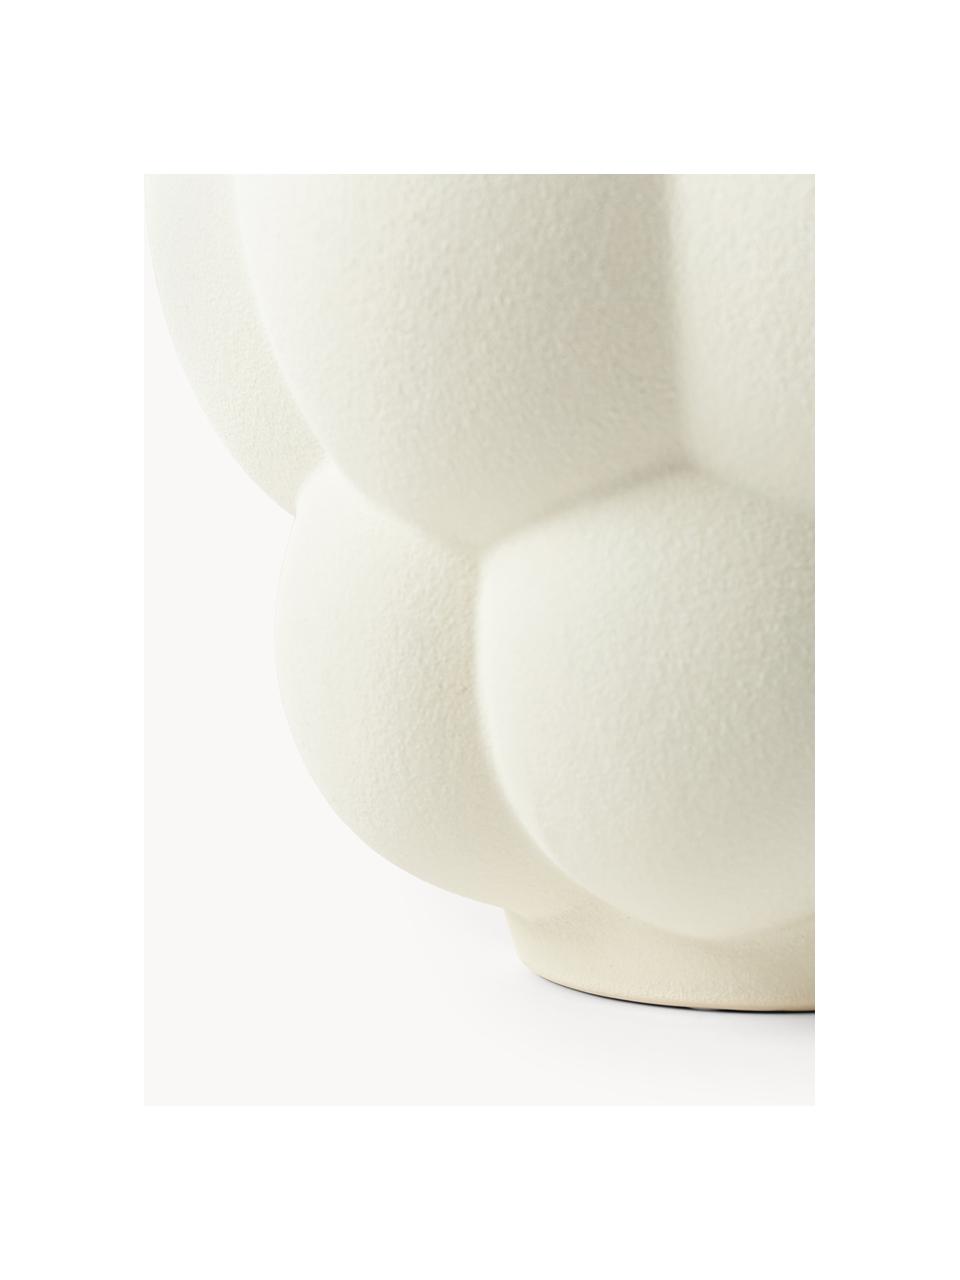 Vaso in ceramica Uva, alt. 28 cm, Ceramica, Bianco latte, Ø 26 cm x Alt. 28 cm